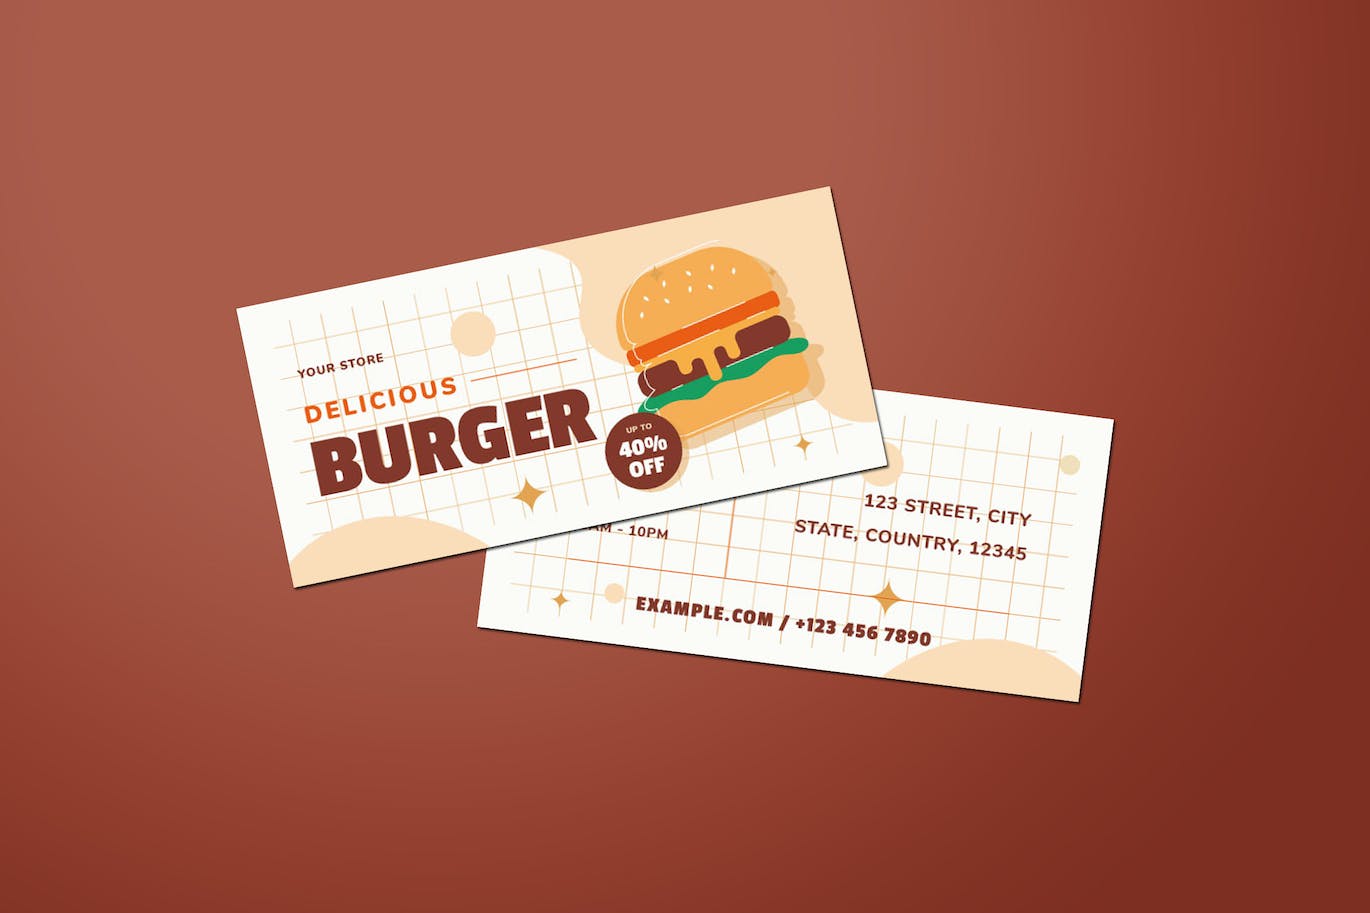 汉堡销售DL传单设计模板 Burger Sale DL Flyer 设计素材 第1张